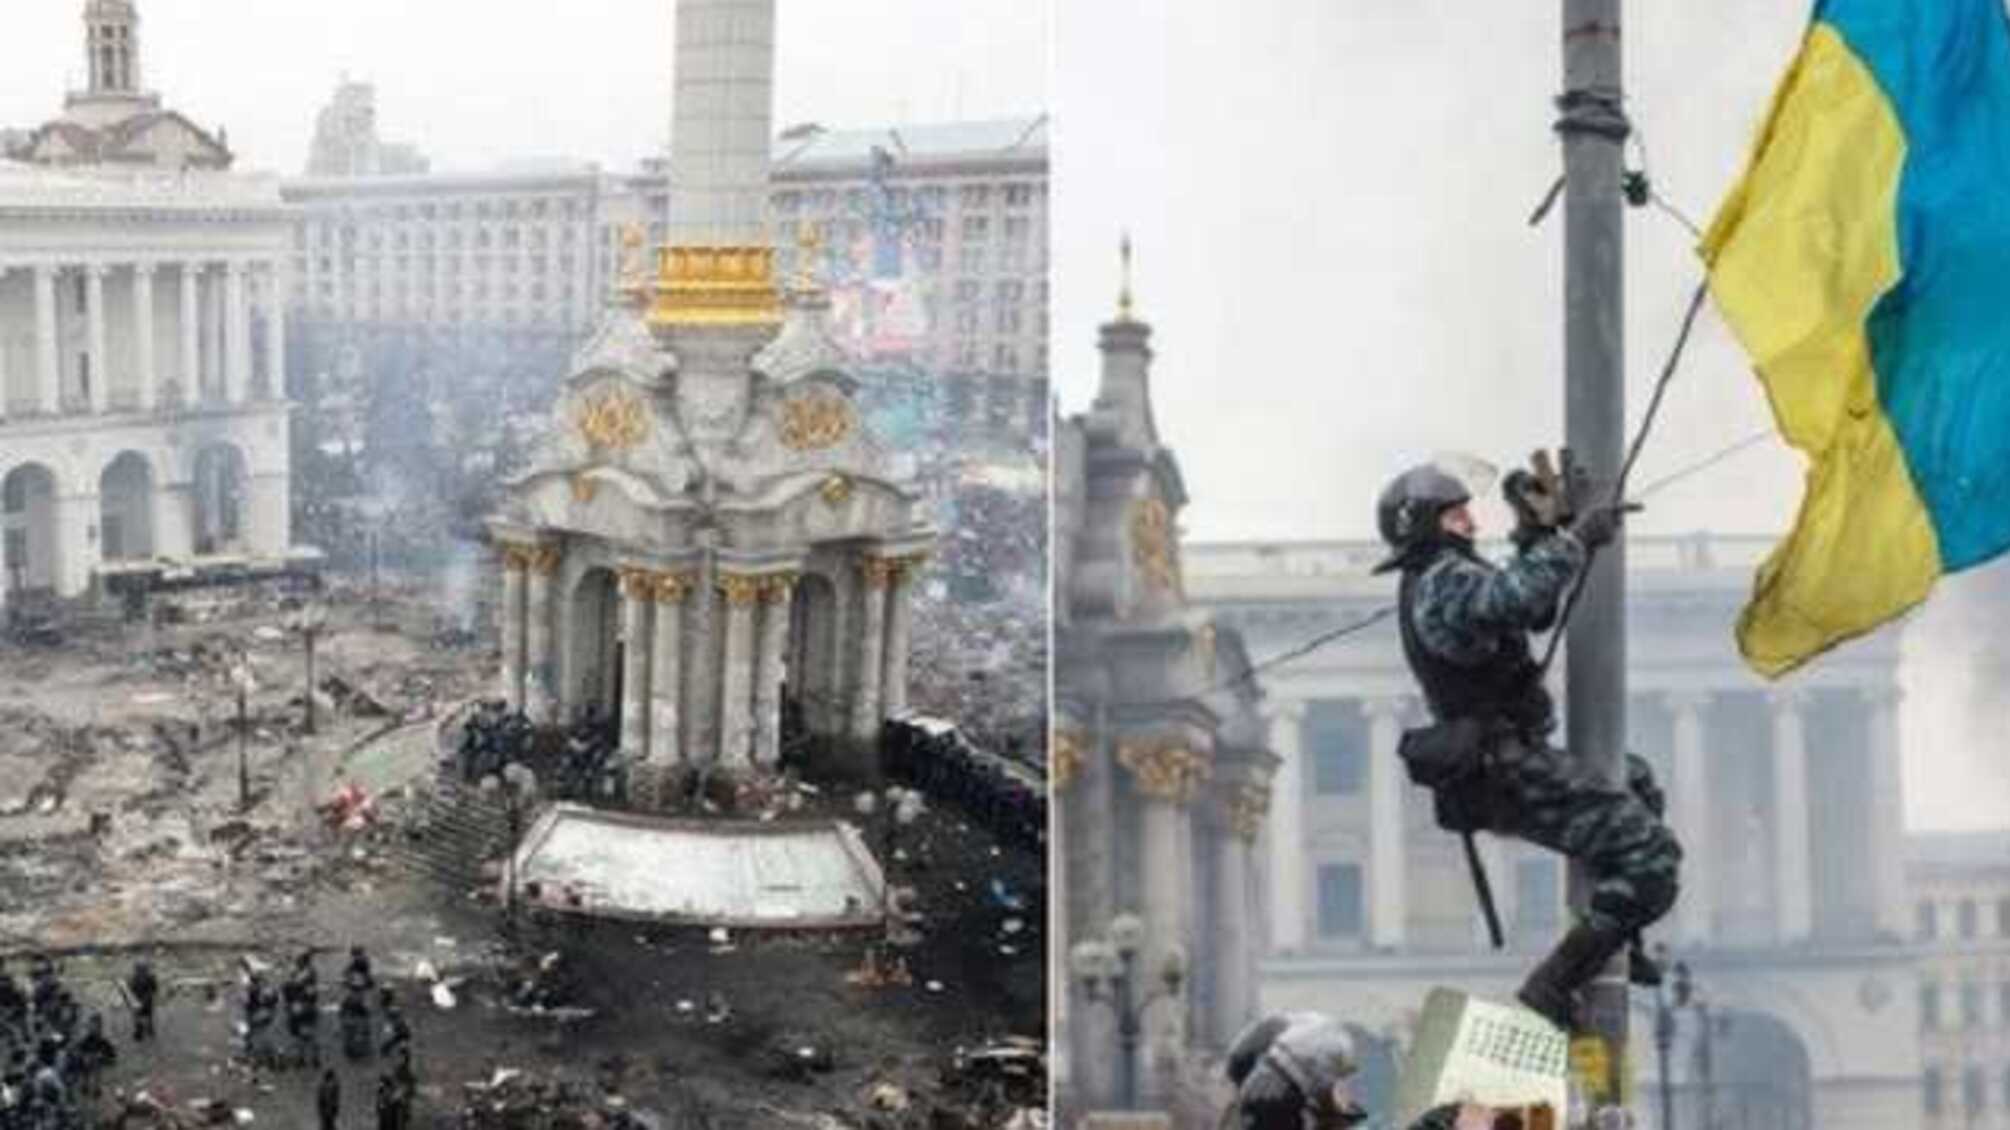 Прошел сквозь пули и удары: эмоциональная история участника Майдана растрогала украинцев